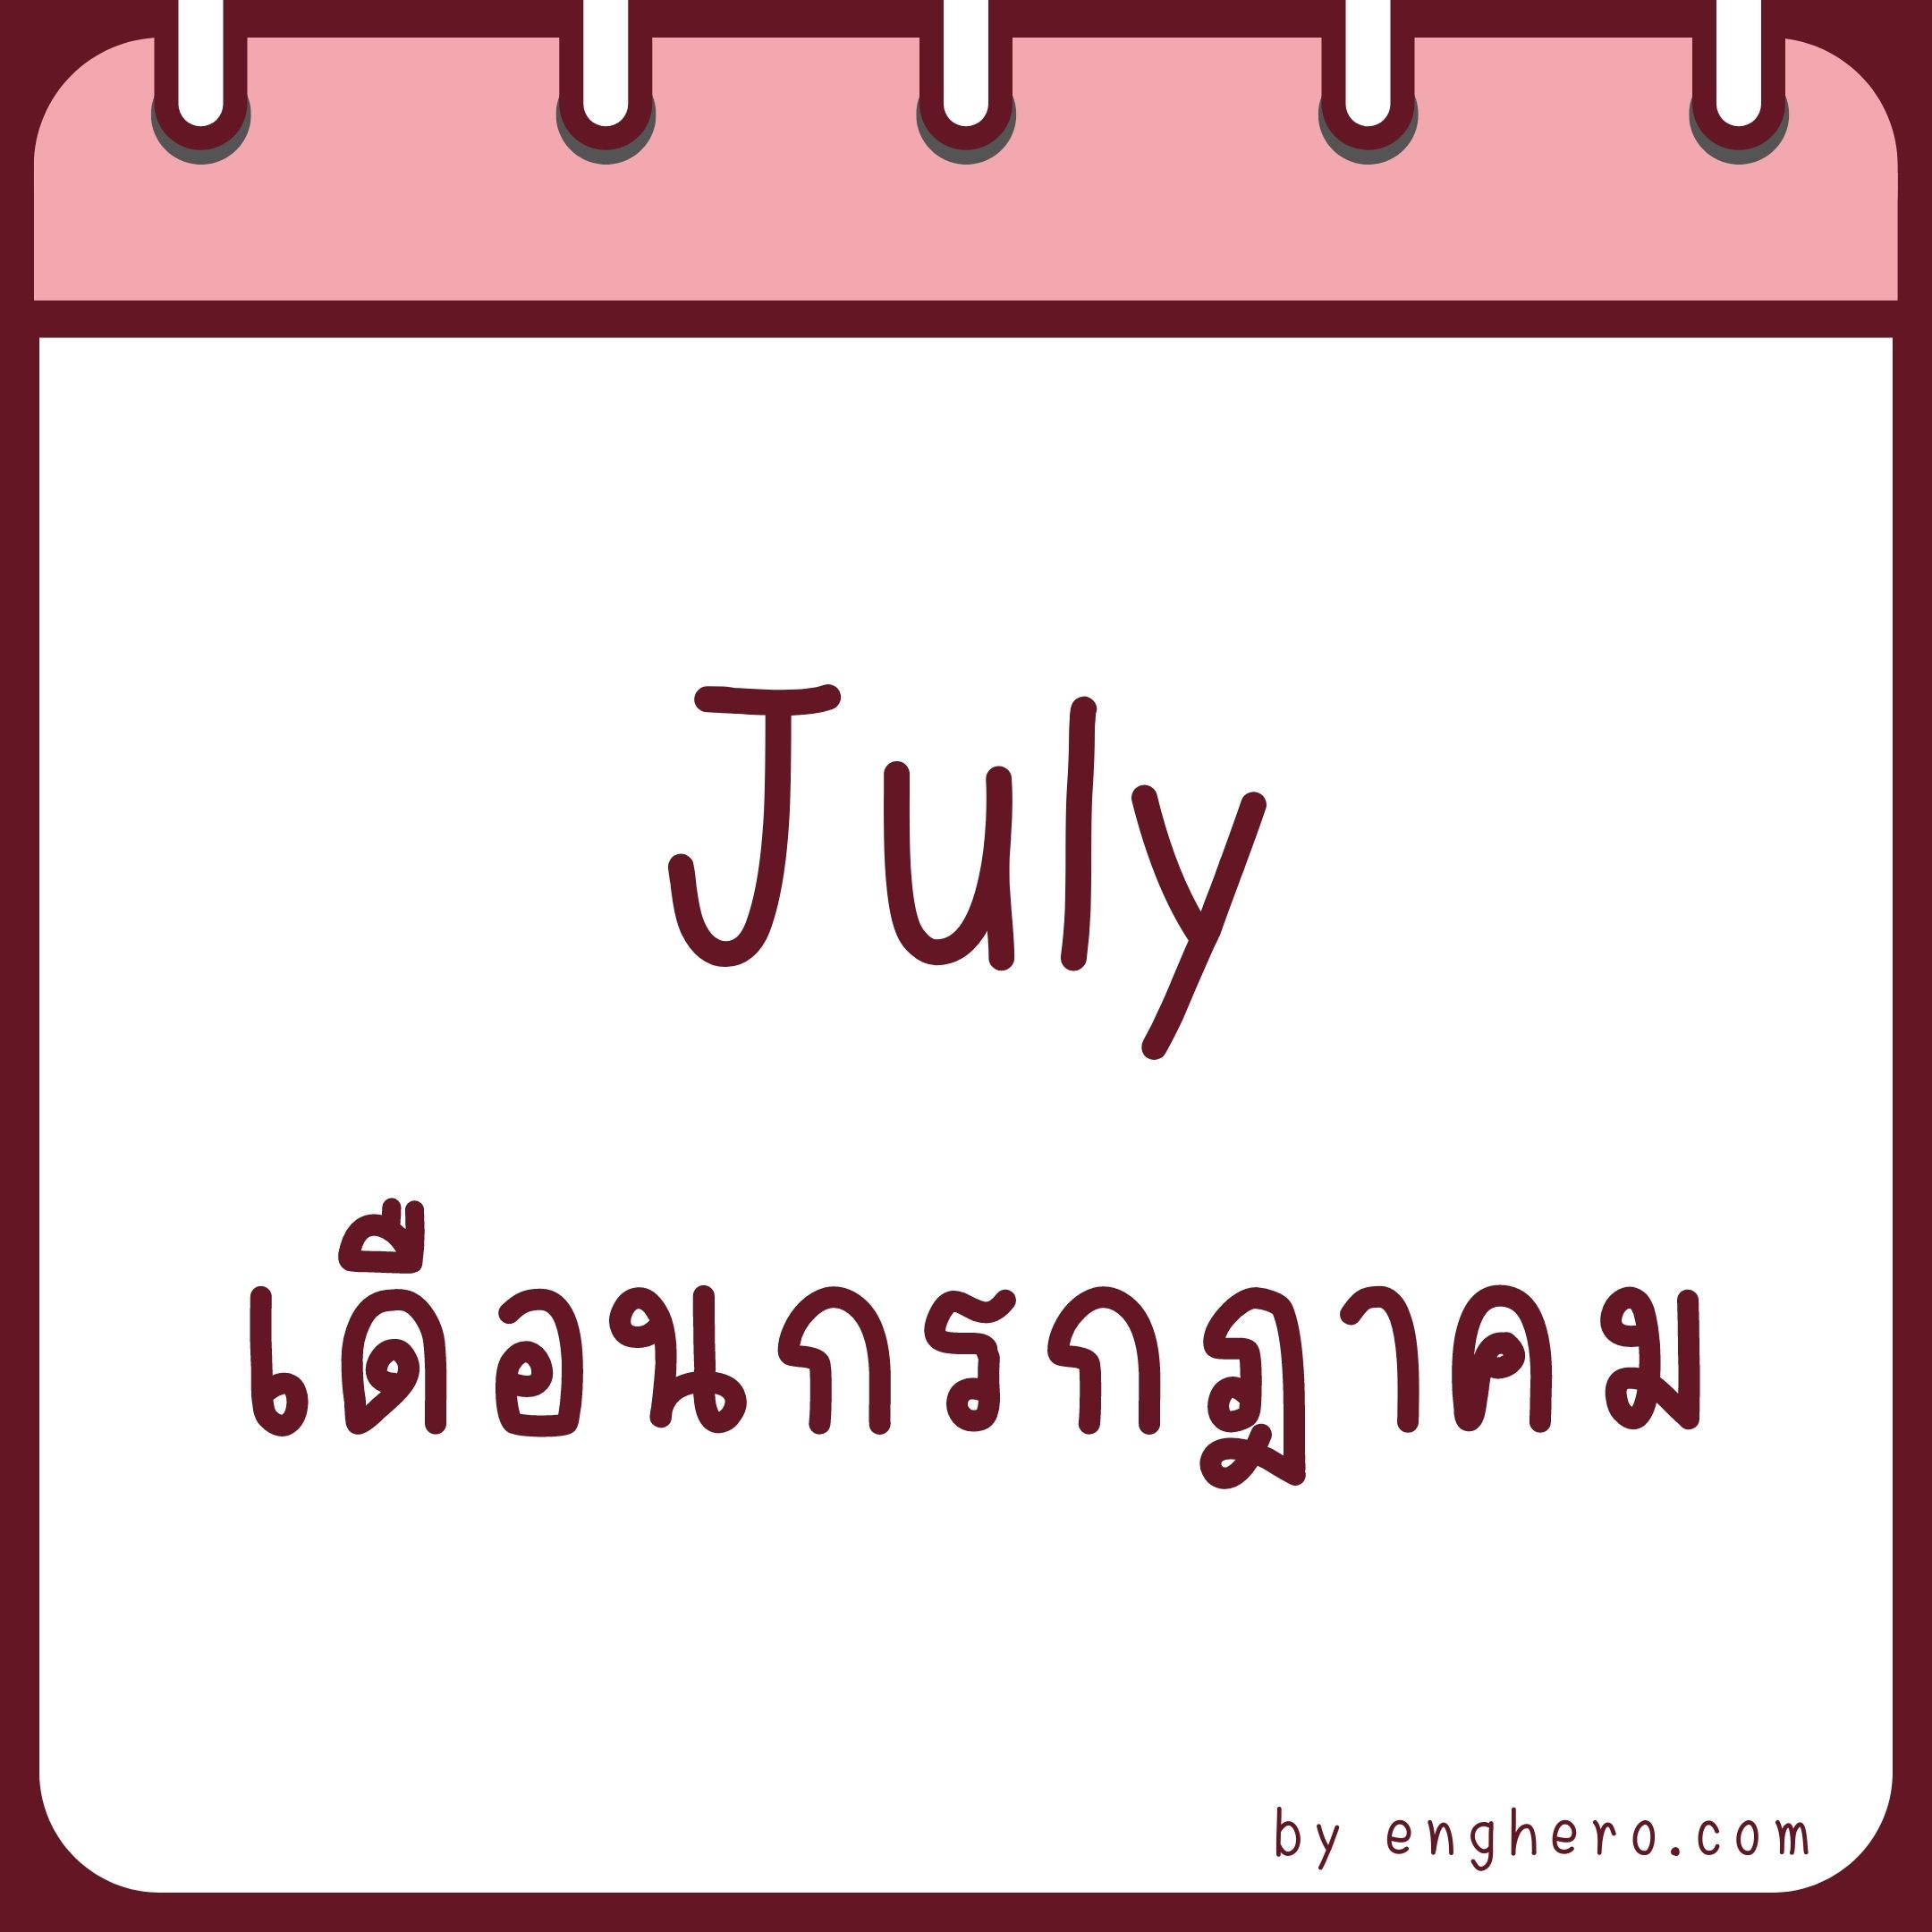 เดือนกรกฎาคม ภาษาอังกฤษ คือ July